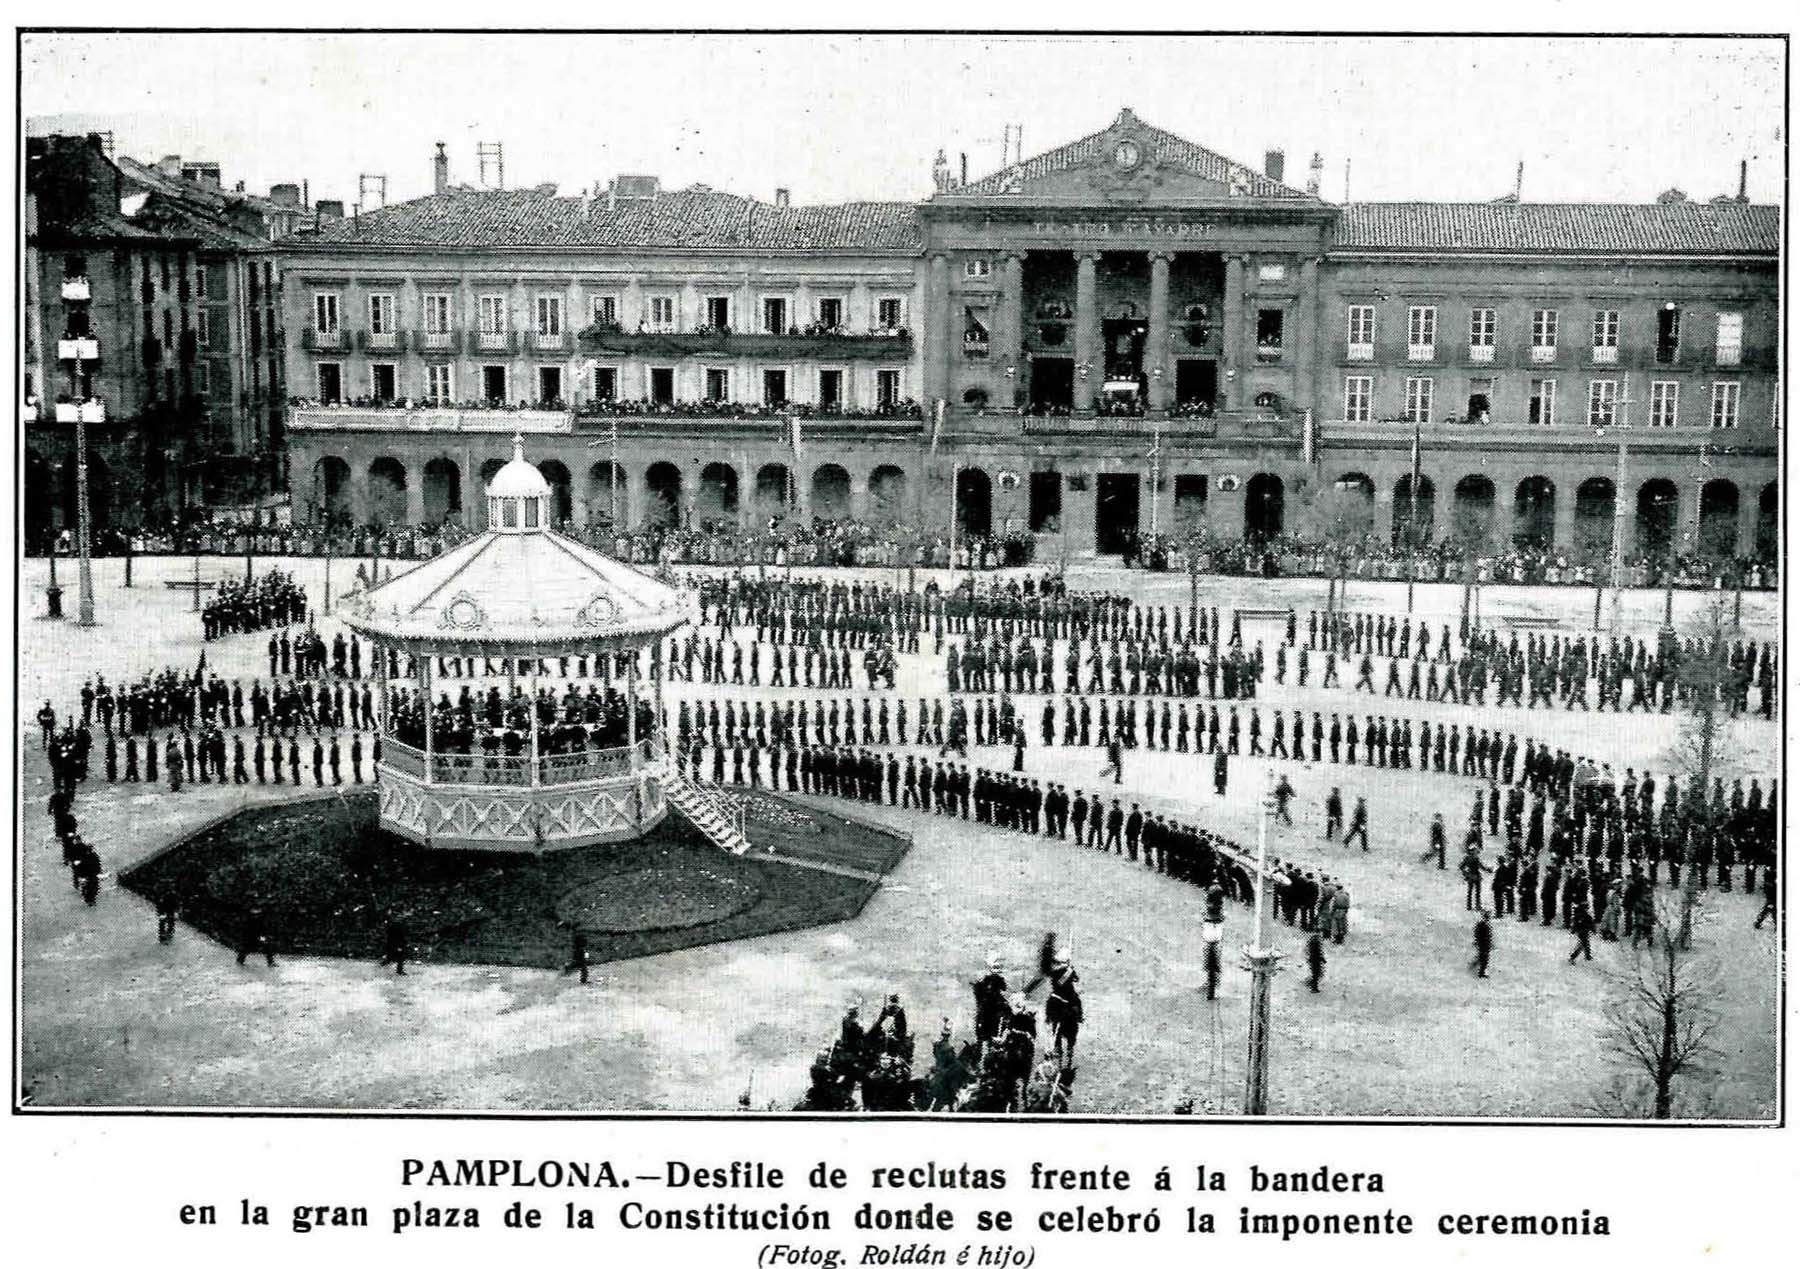 Acto de jura de bandera de los nuevos reclutas en la plaza de la Constitución.